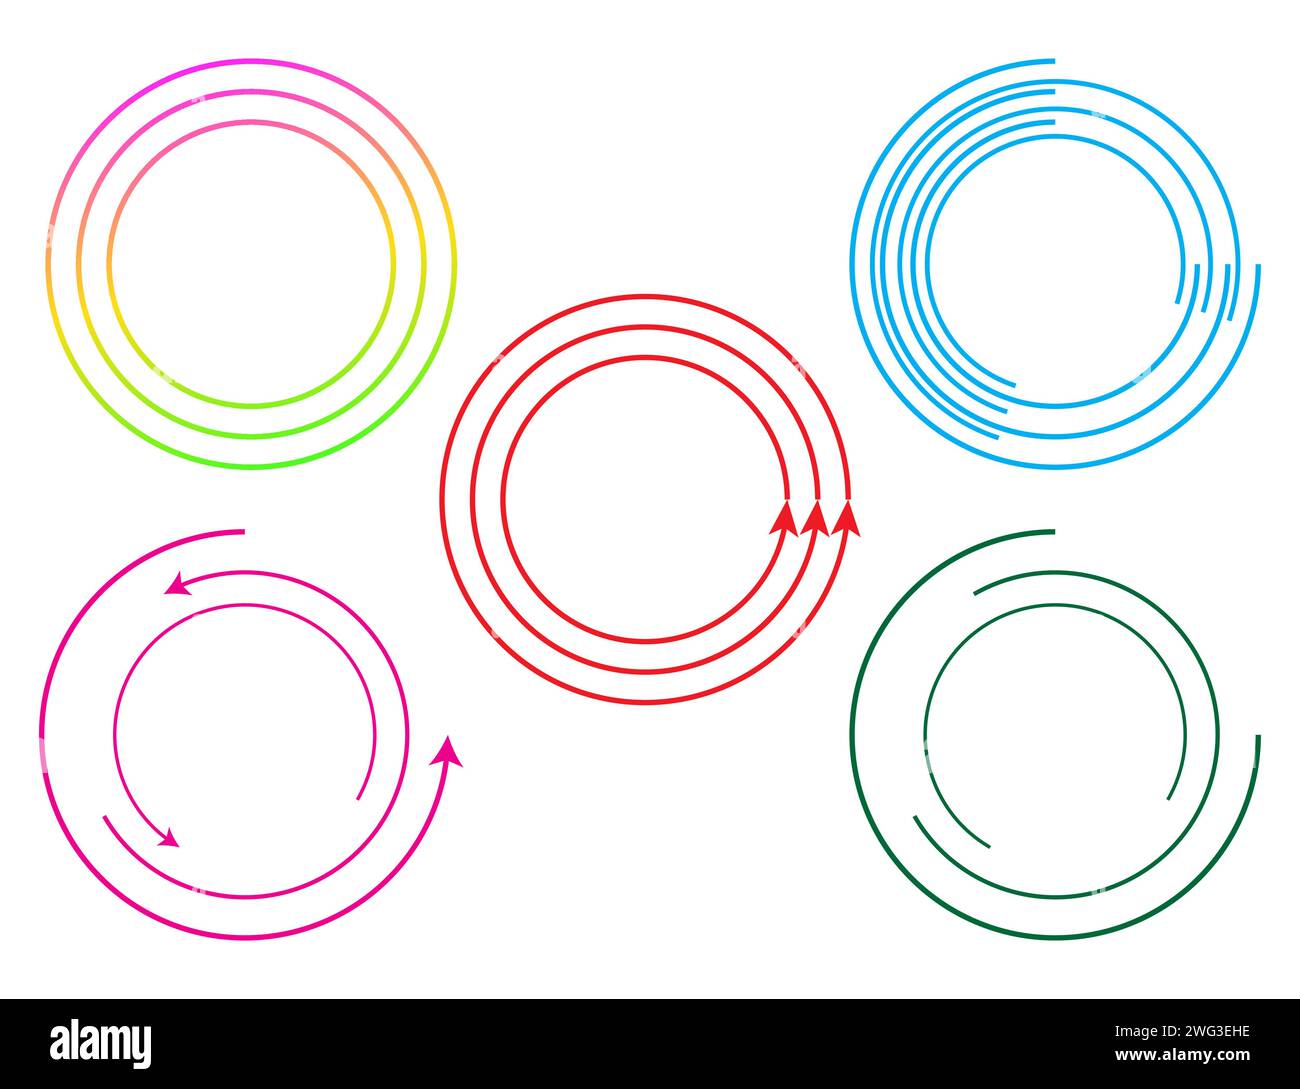 Circular frame spins, linear symbol rotates, circles frame loop, circle loading bar. Stock Vector